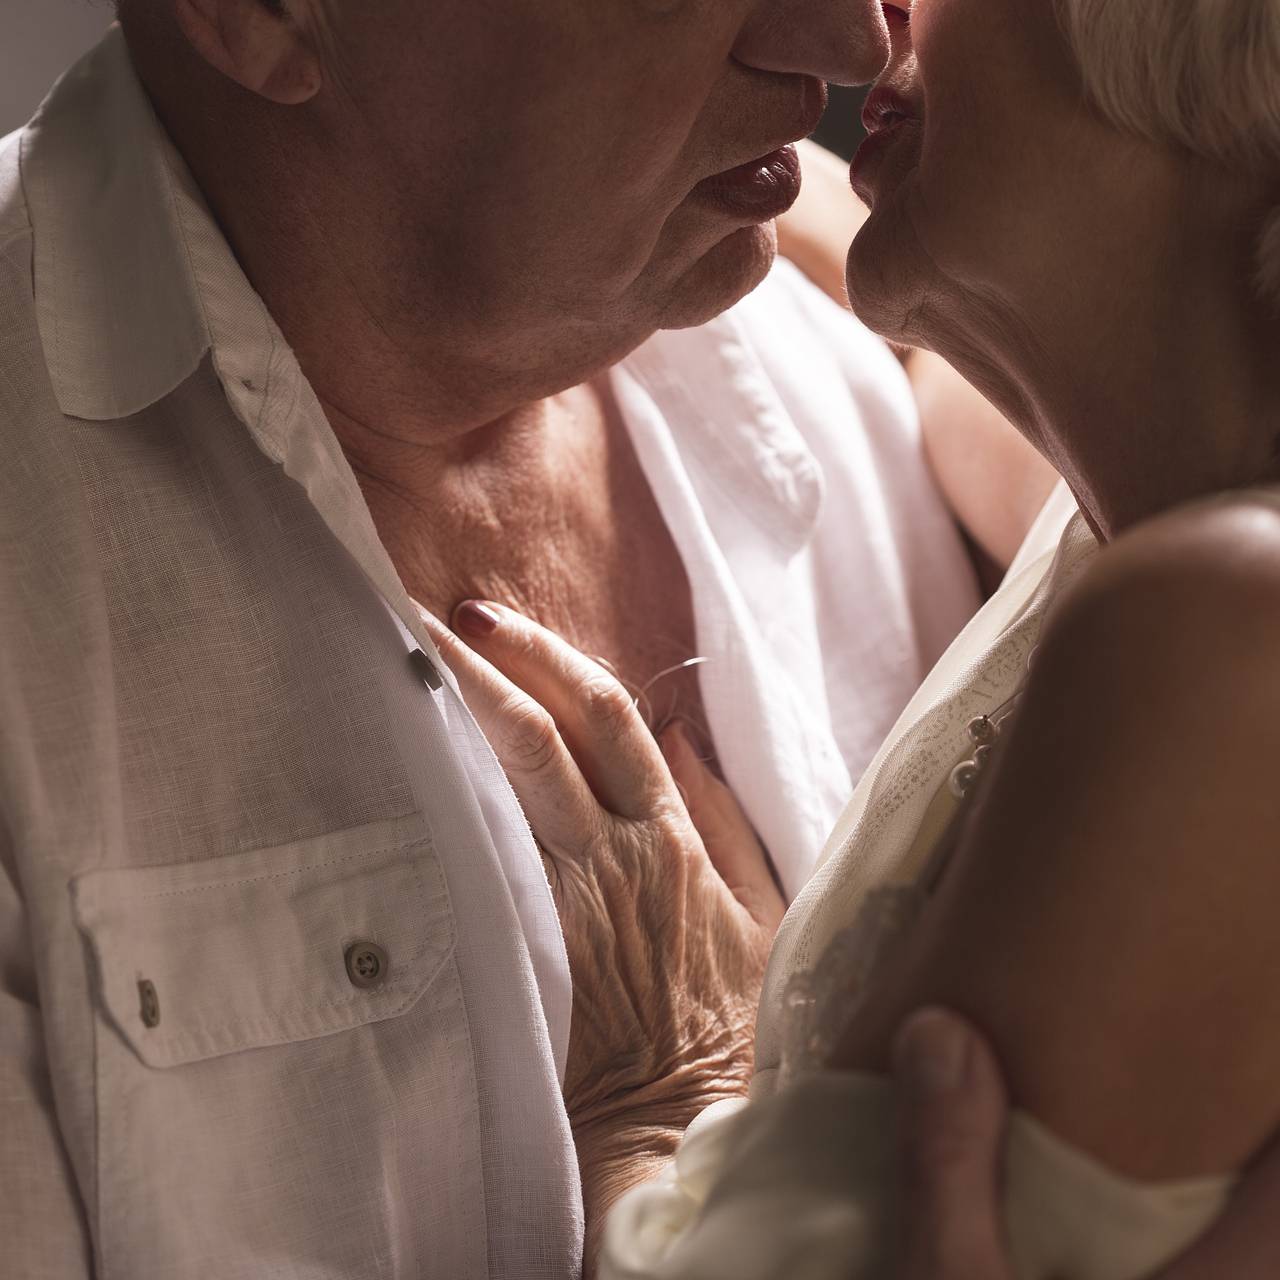 Пенсионеры рассказывают, как они любят, занимаются сексом и ходят на свидания - Афиша Daily